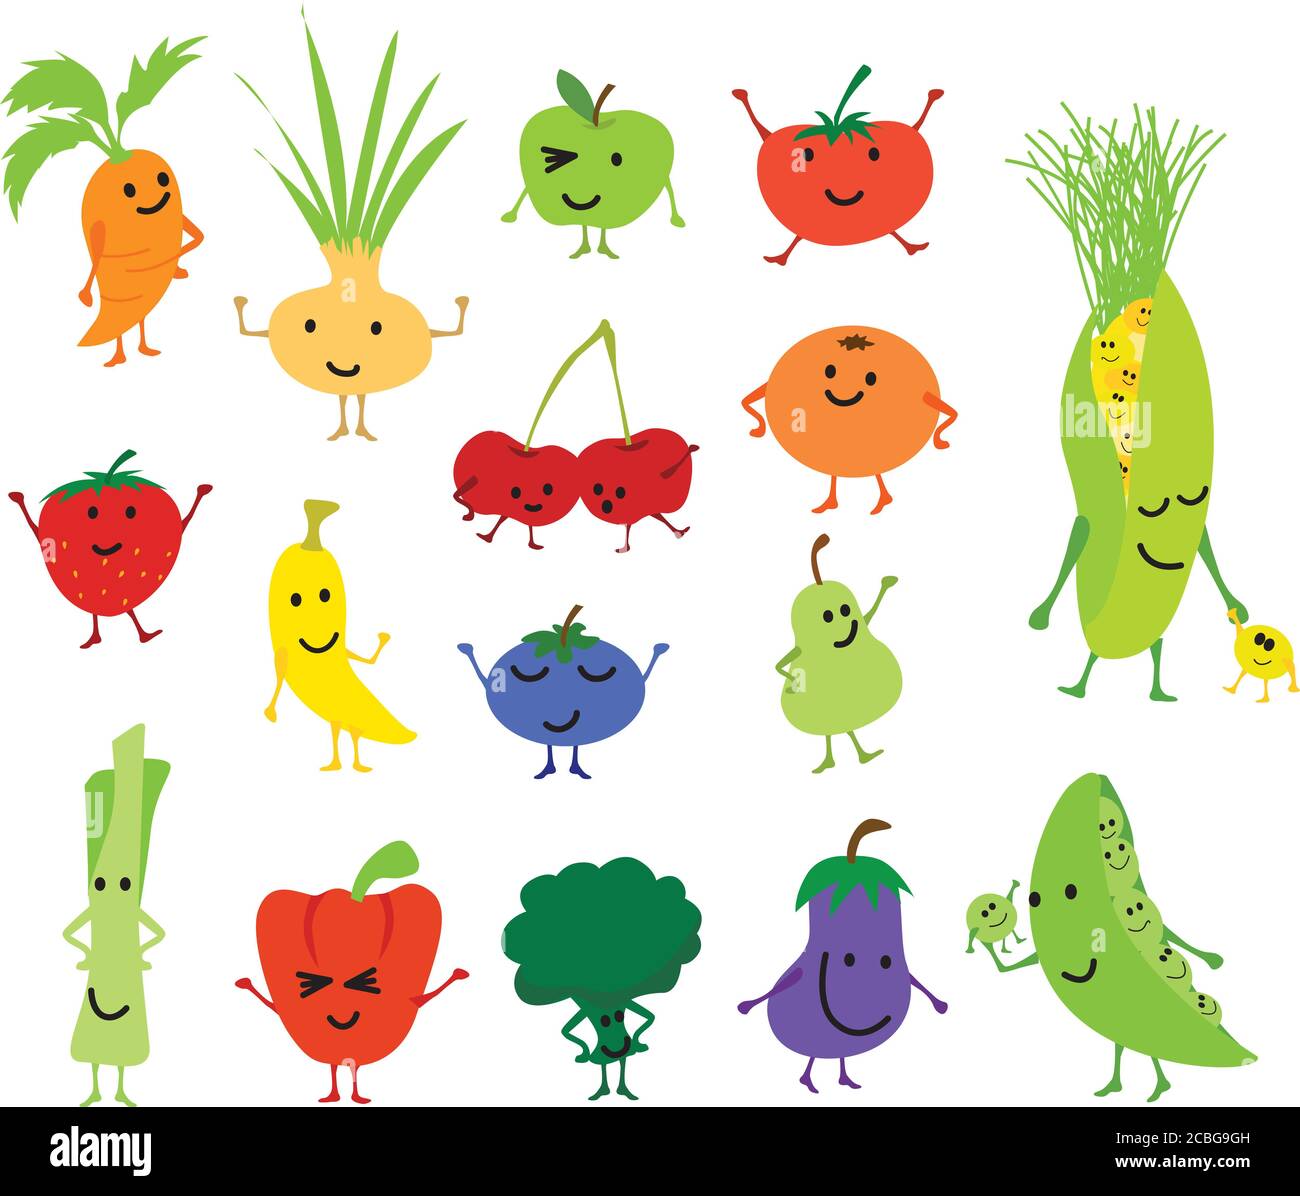 Dessin animé vecteur kawaii fruits et légumes mignons et drôles, personnages isolés sur fond blanc Banque D'Images